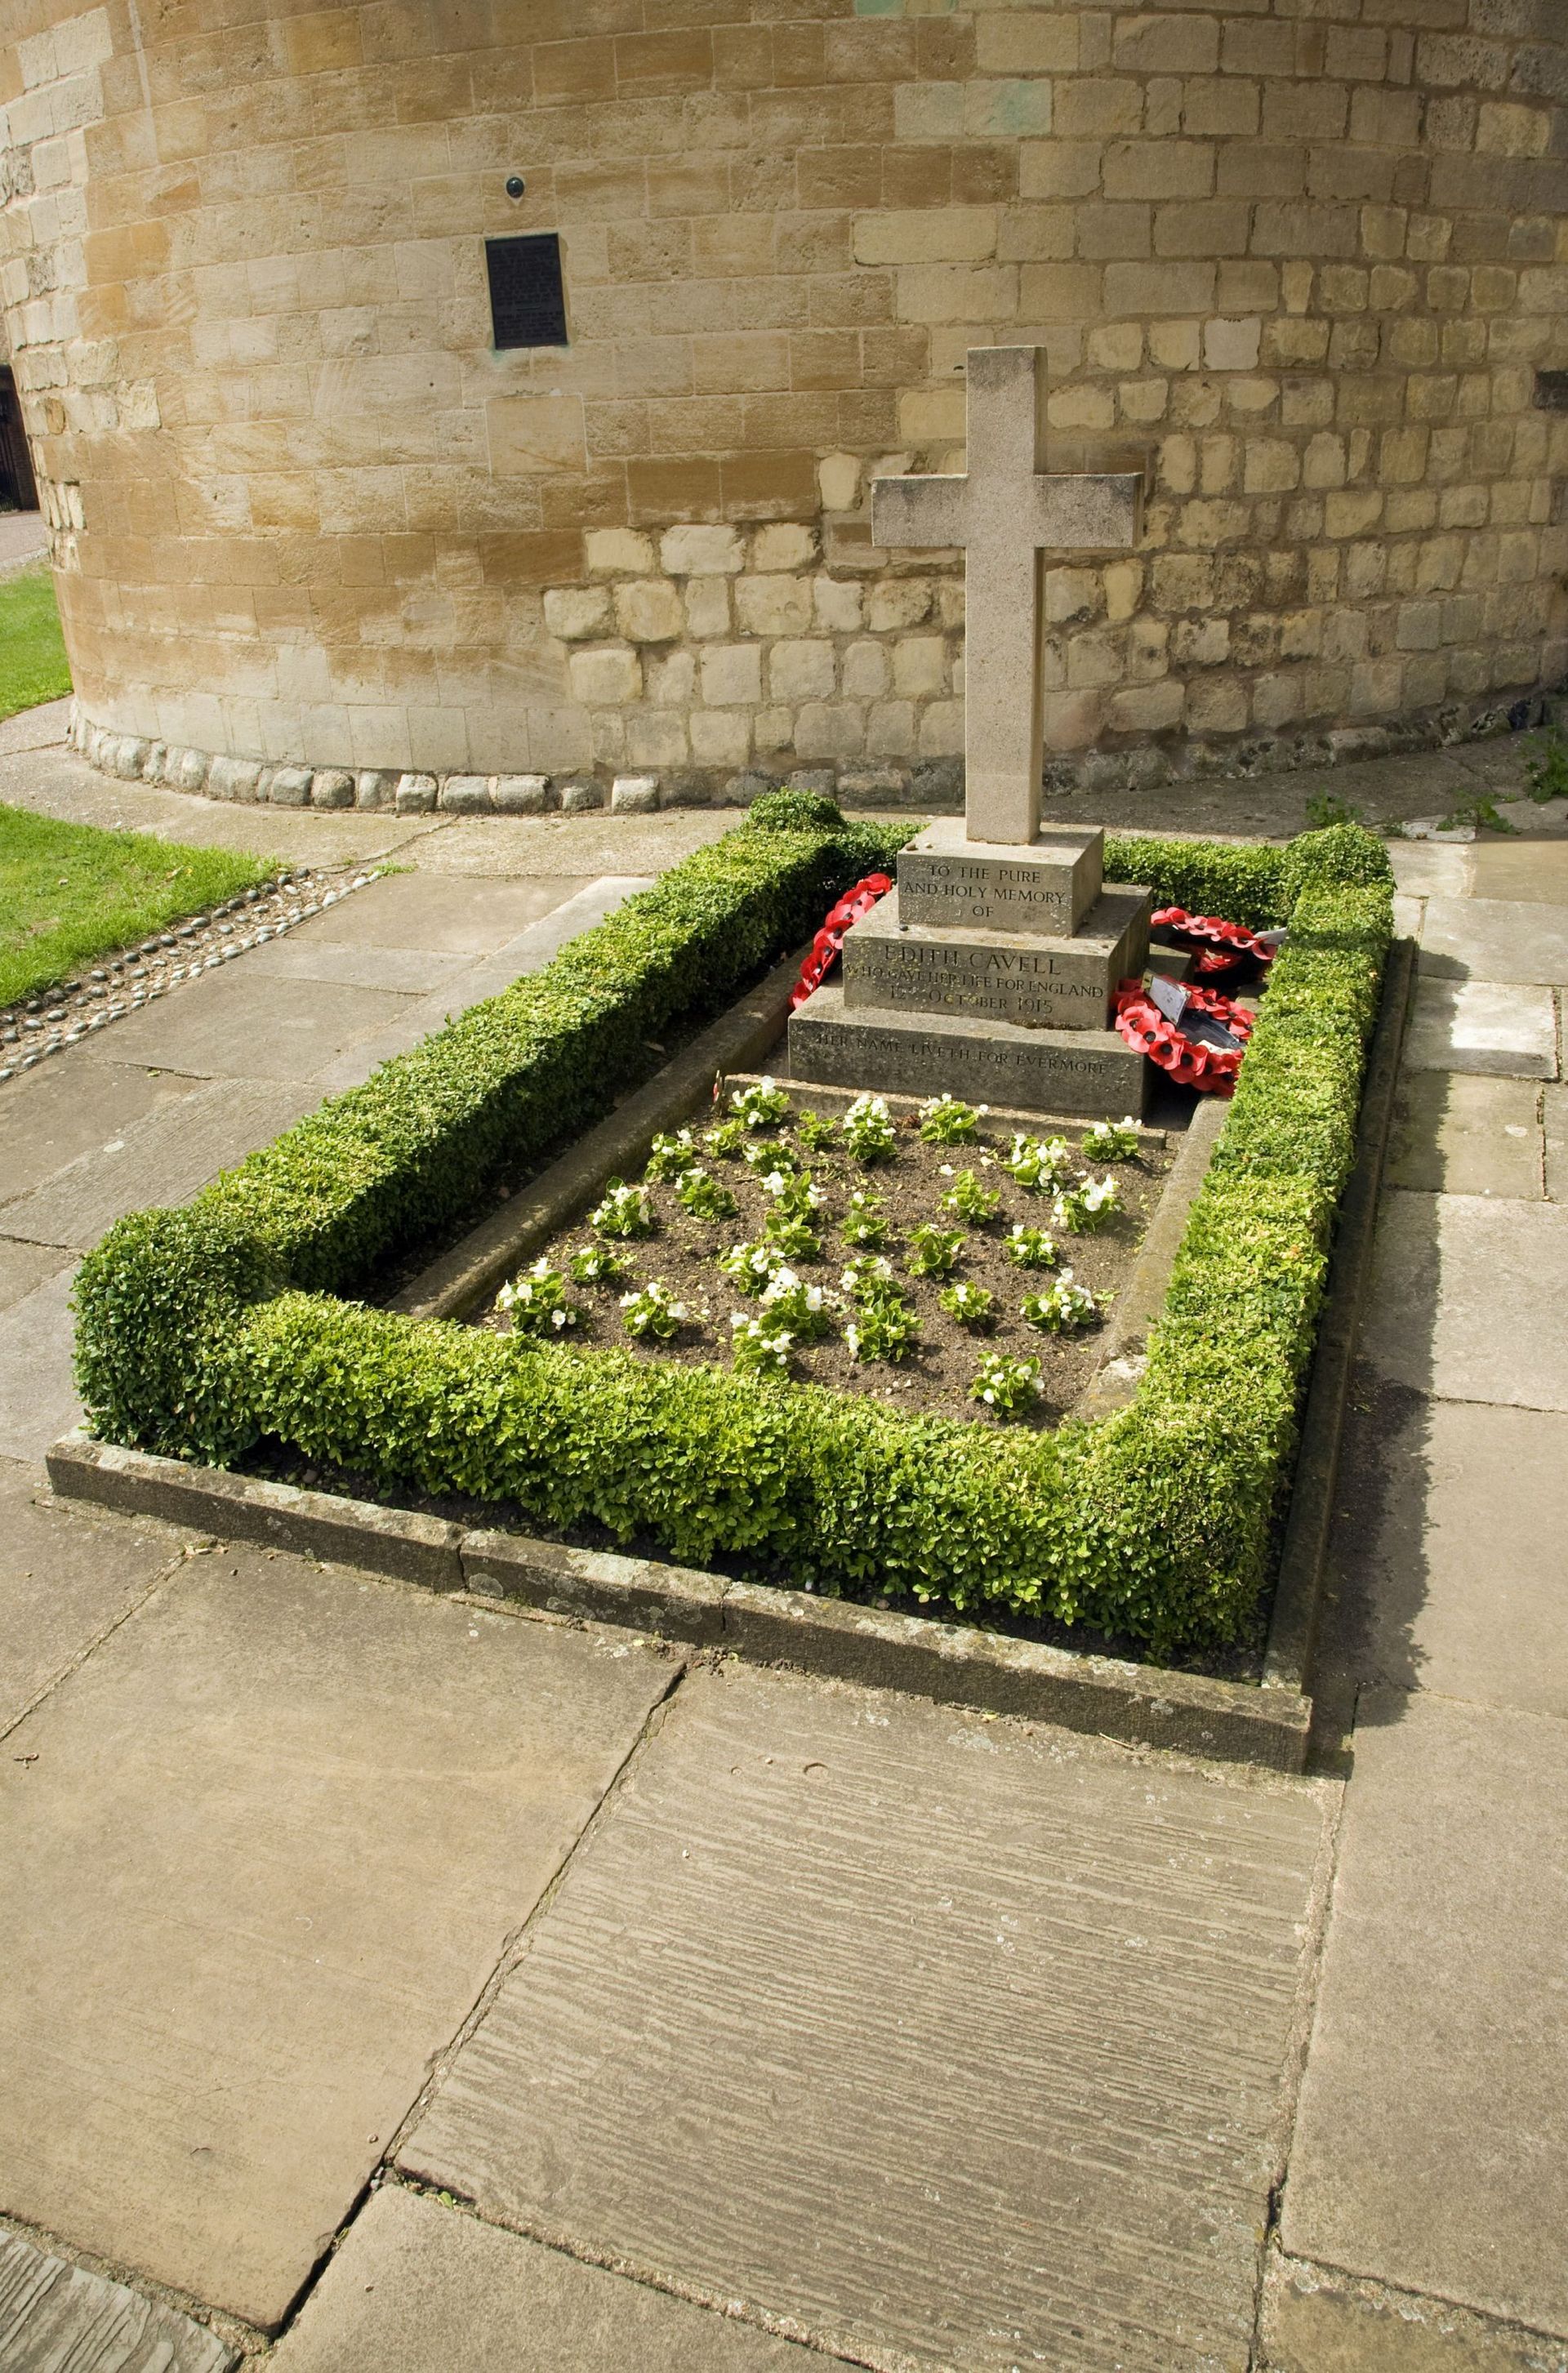 La tombe d’Edith Cavell, au pied de la cathédrale de Norwich.